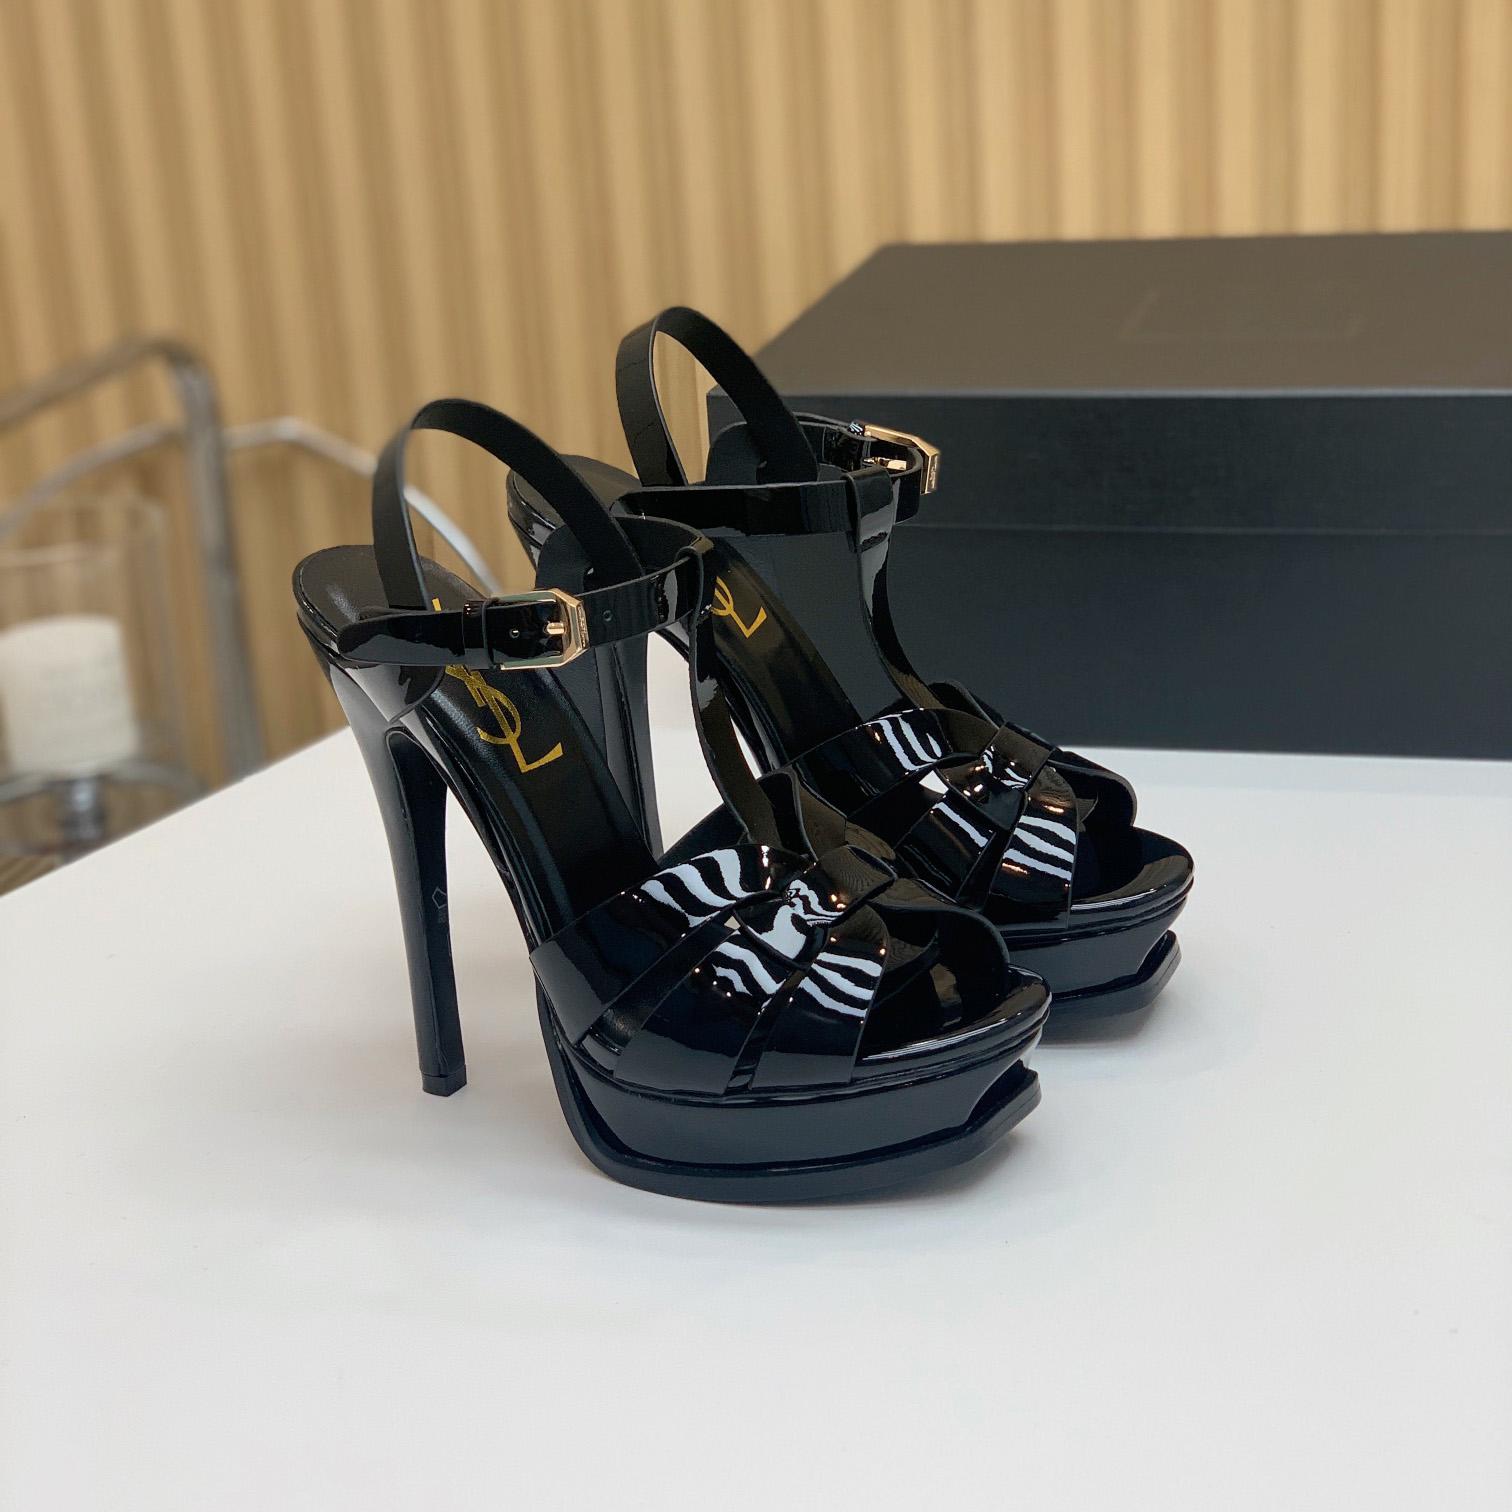 Saint Laurent Tribute Platform Sandals In Patent Leather - DesignerGu